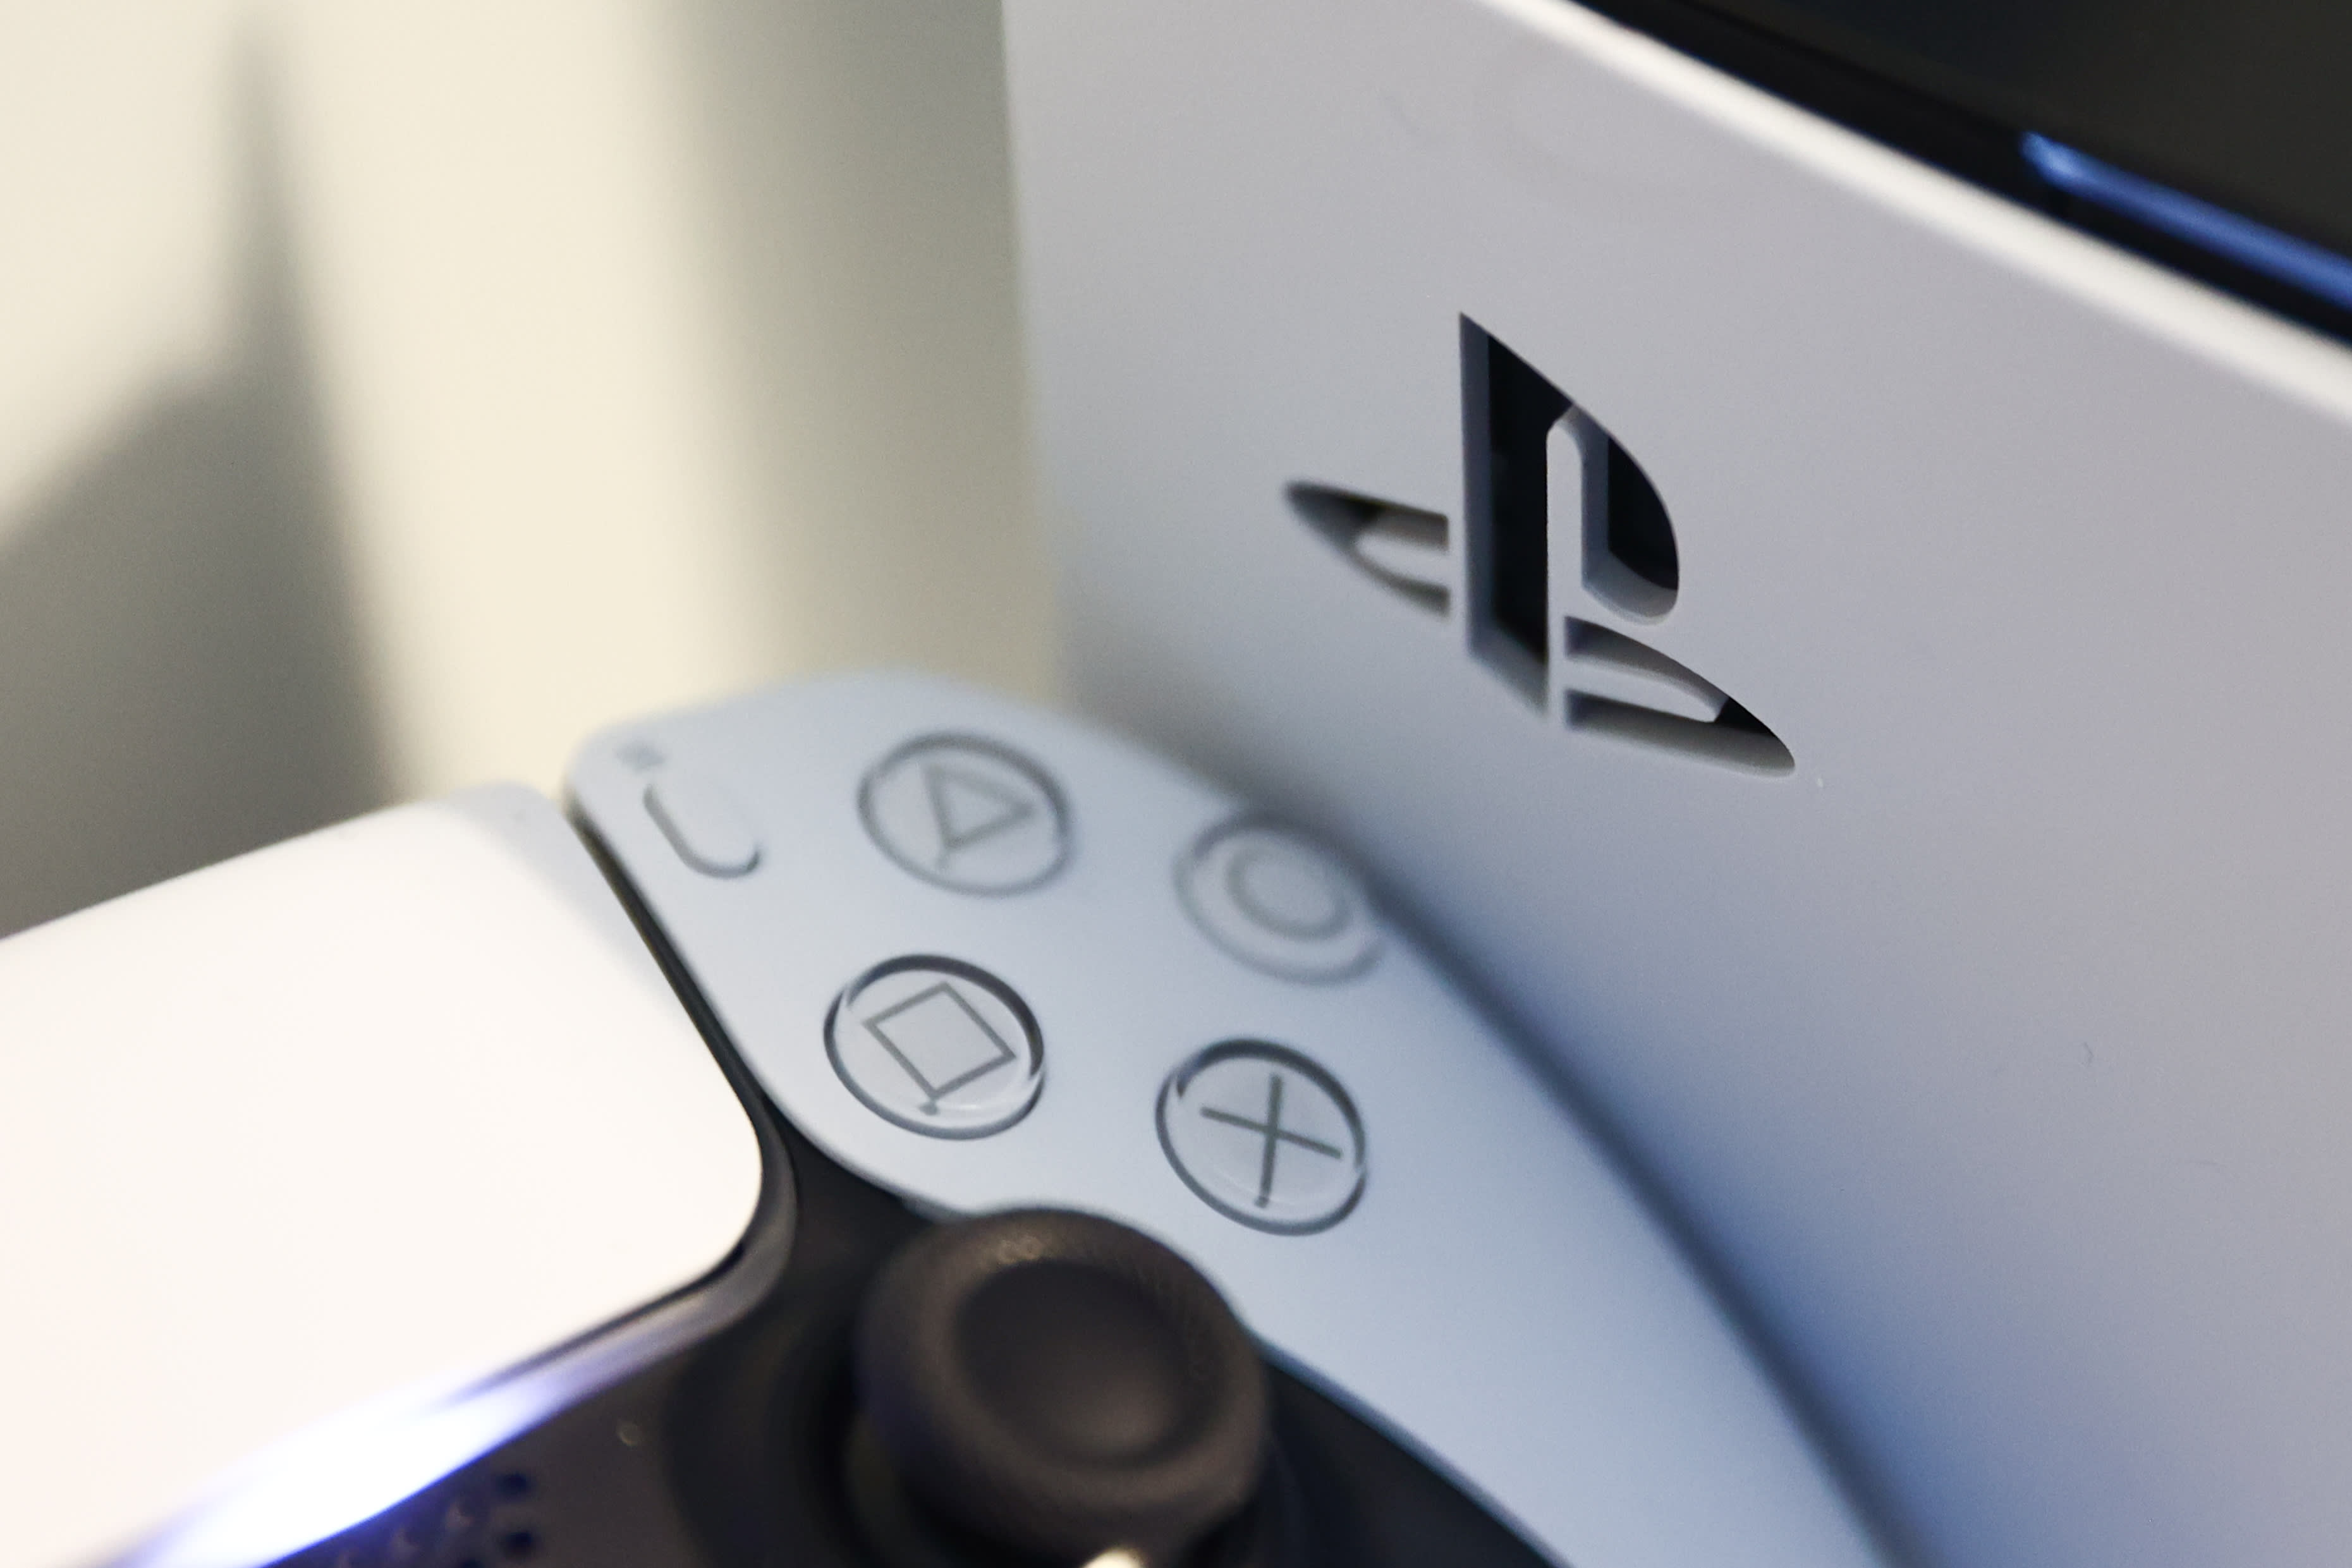 تم التشكيك في هامش ألعاب Sony بعد أن أدى خفض مبيعات PS5 إلى انخفاض الأسهم